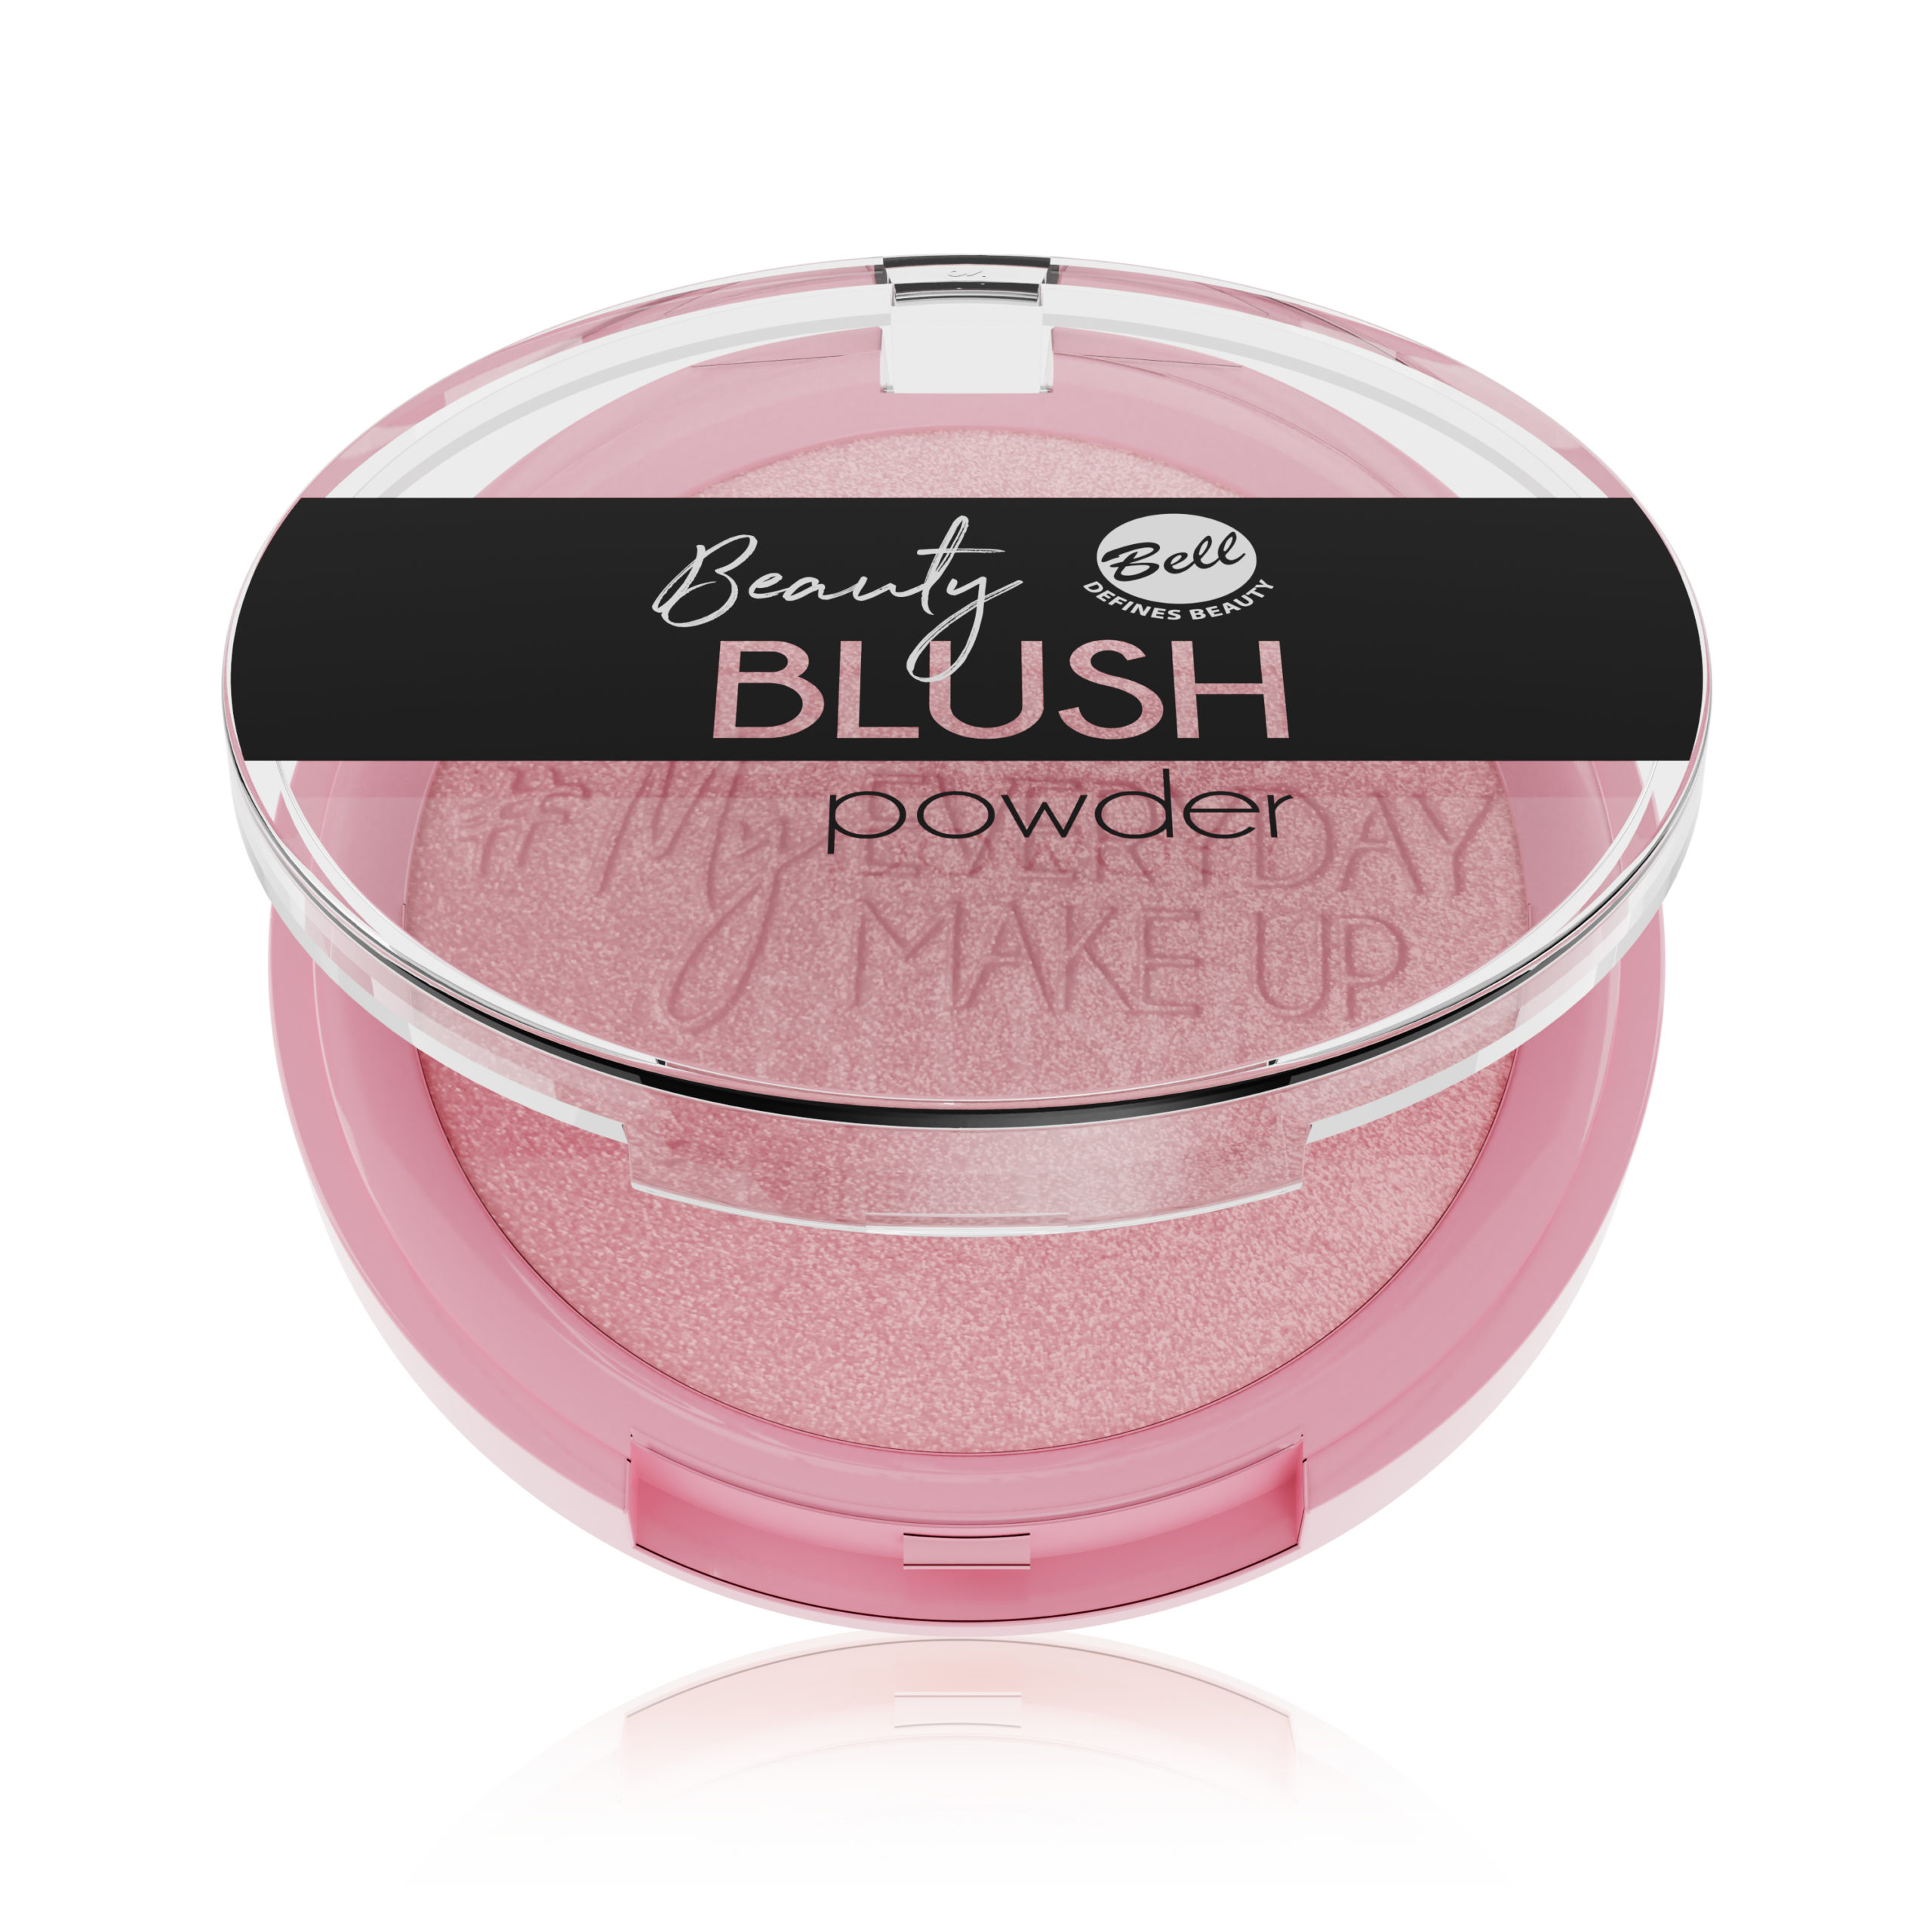 Beauty Blush Powder